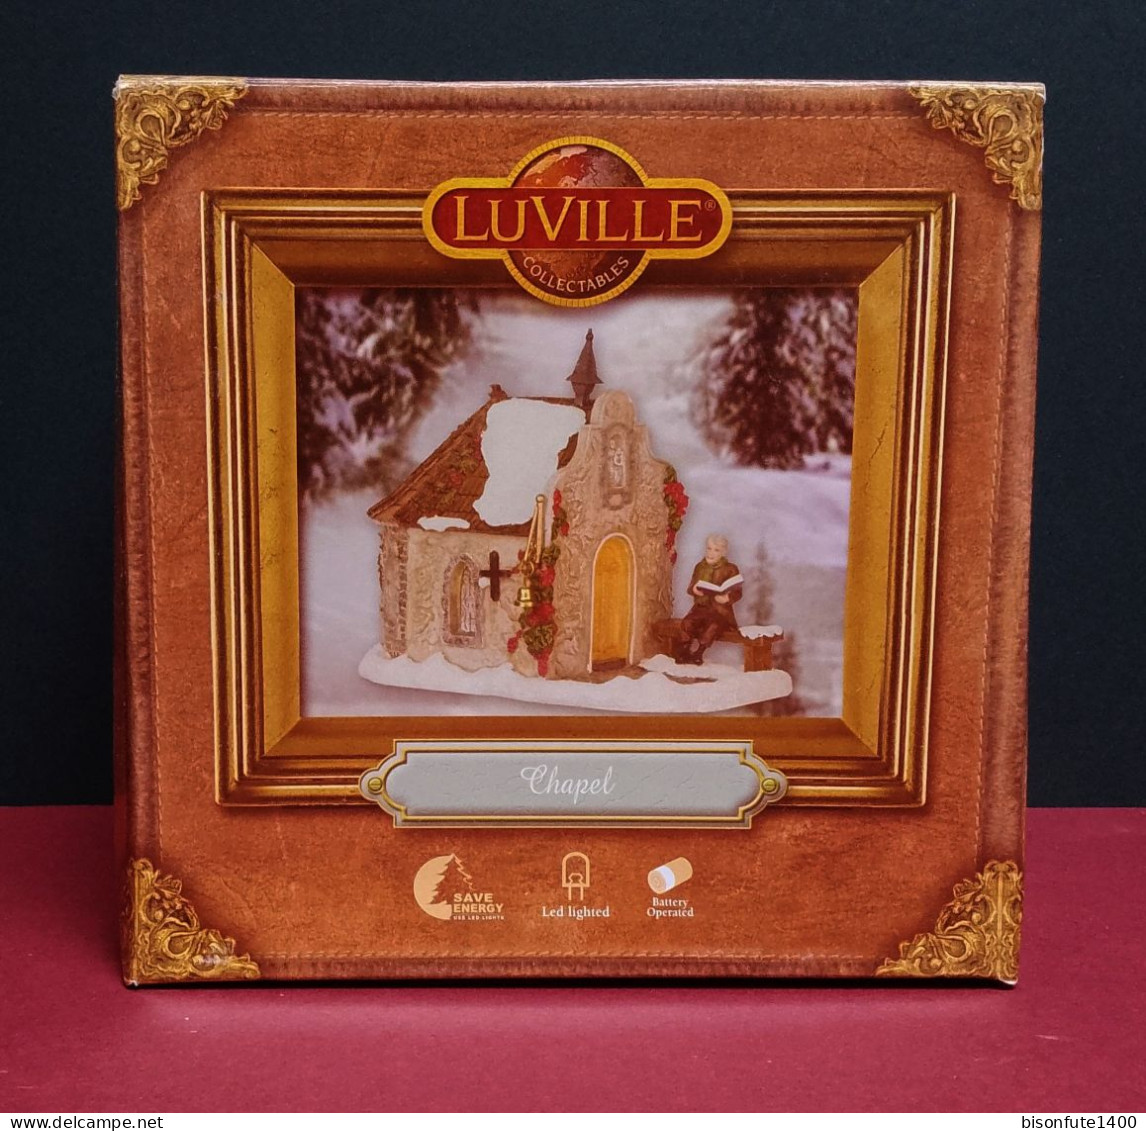 Collection LUVILLE : Sujet de décoration pour créer un décor de Noël au pied du sapin ( Voir photos et descriptif )